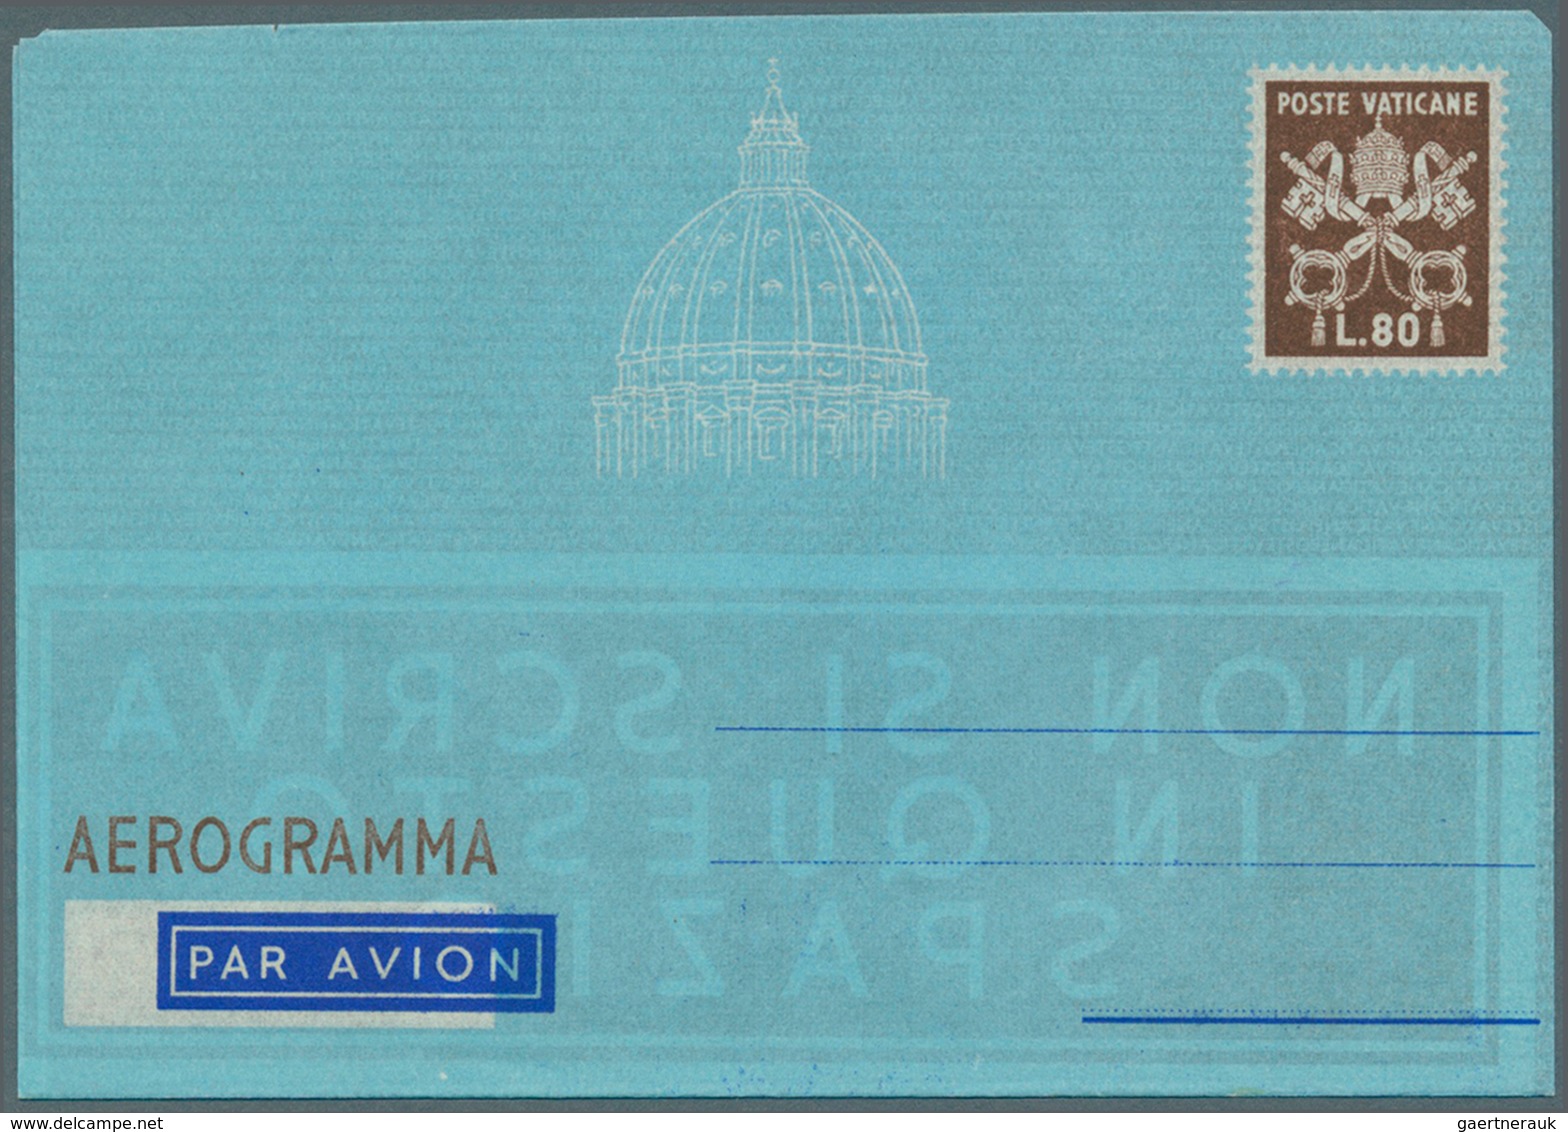 Vatikan - Ganzsachen: 1951, Aerogramme Of The Vatican L. 80 "AEROGRAMMA" Brown, Unused. Unlisted Var - Postwaardestukken